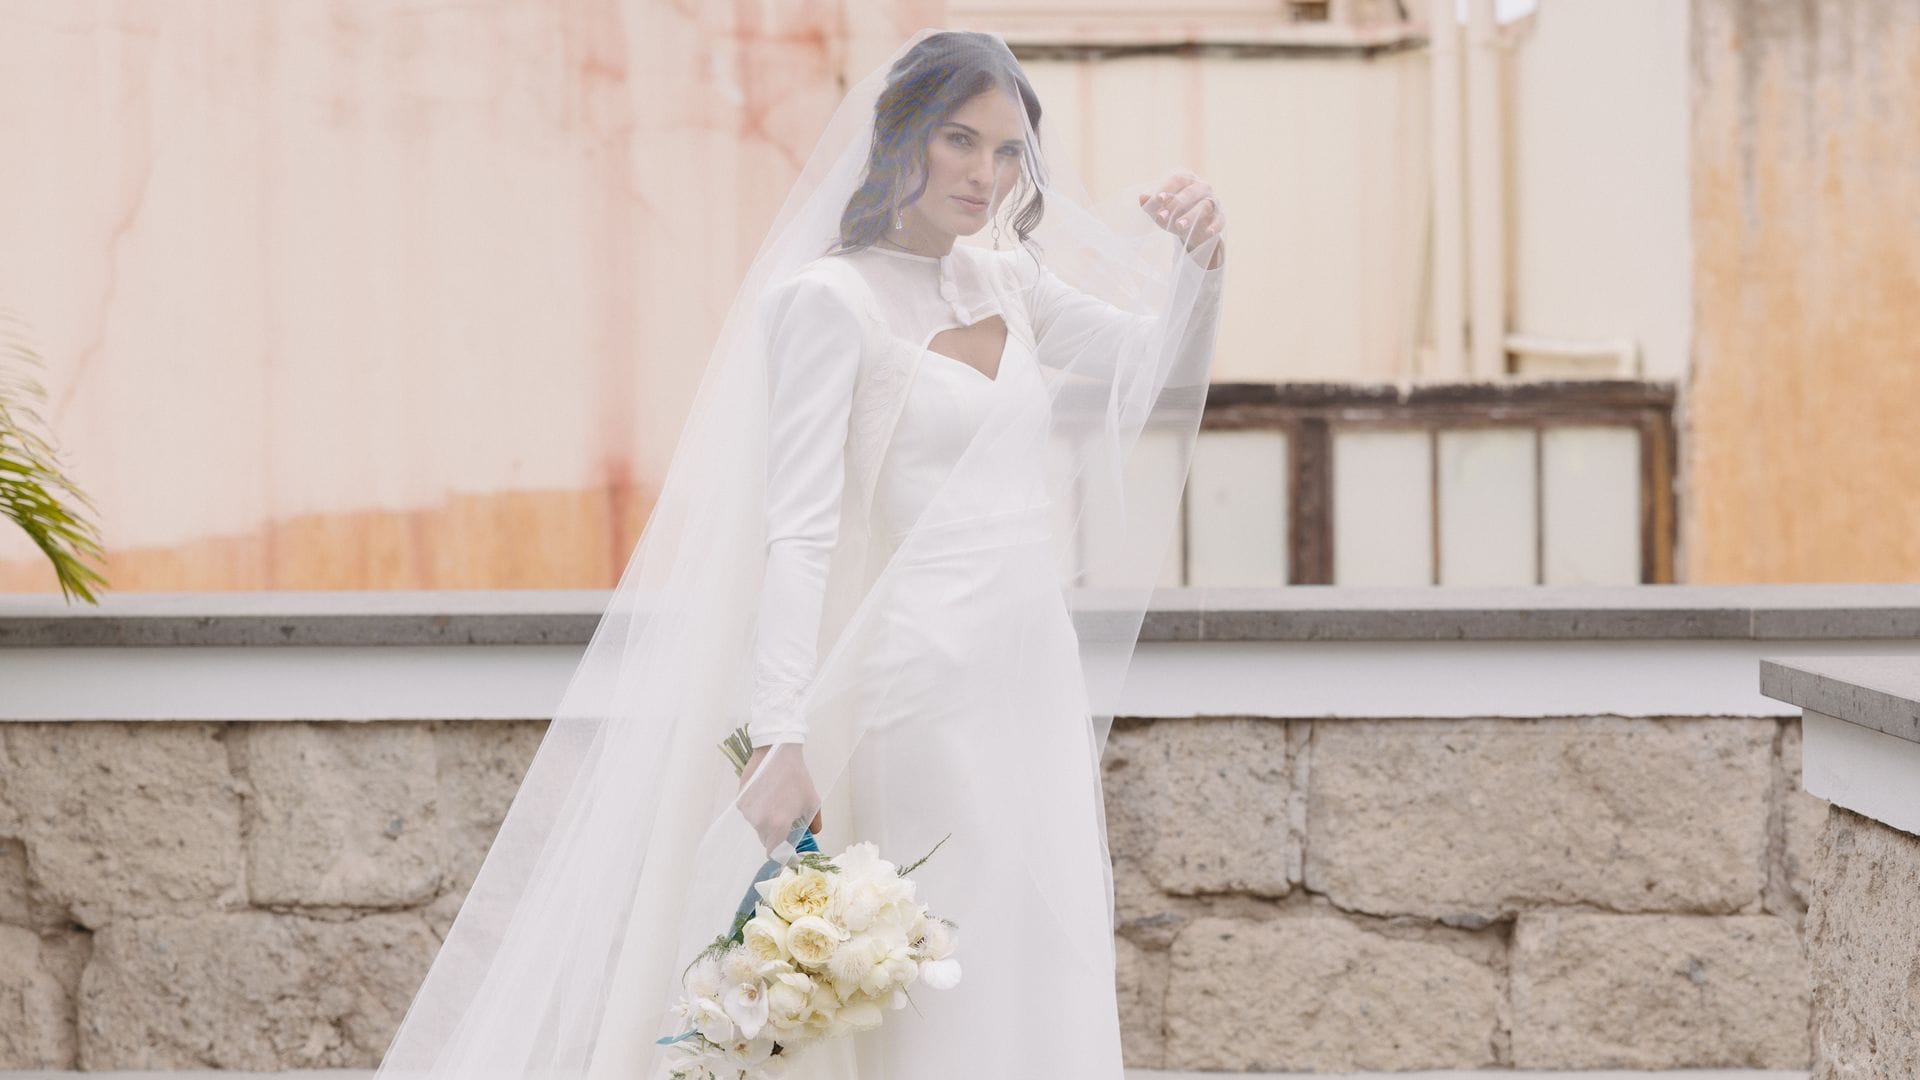 Marina, la modelo que se casó en Canarias con un vestido con capa ¡y se cortó el pelo en plena boda!